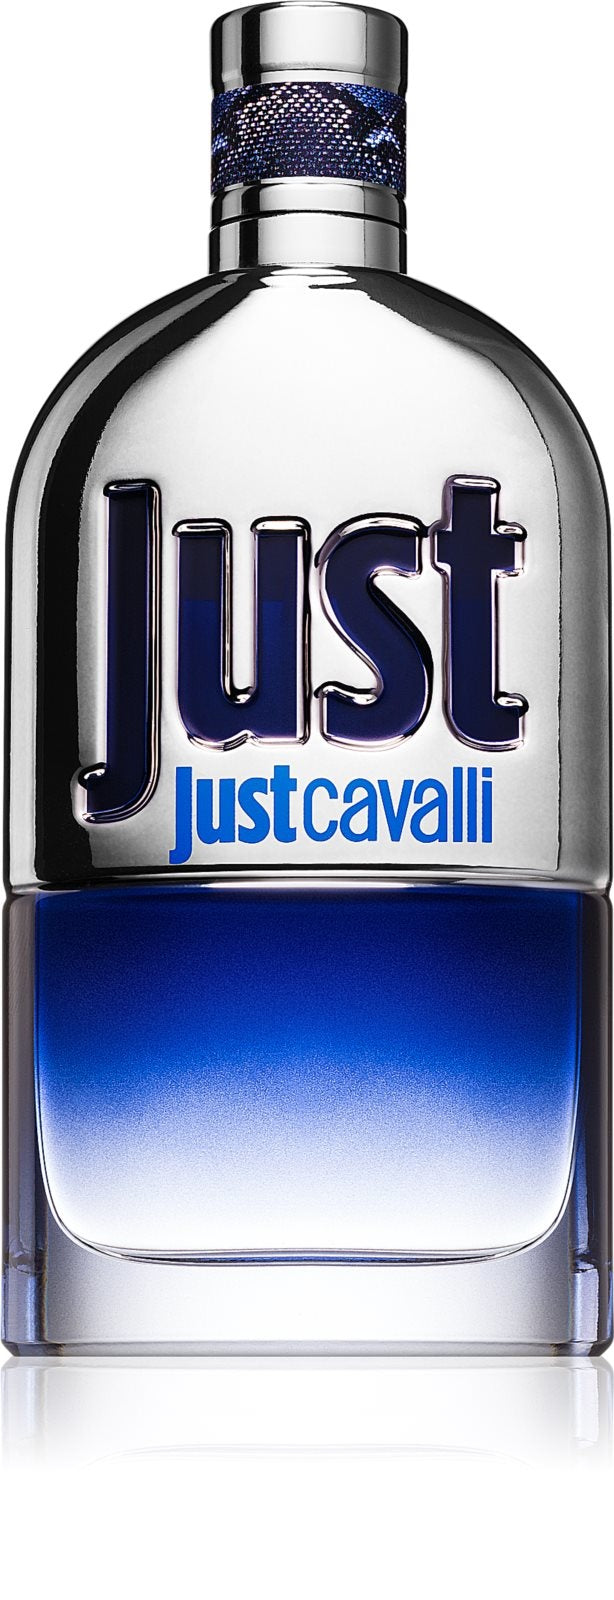 Just Cavalli for Him Eau de Toilette